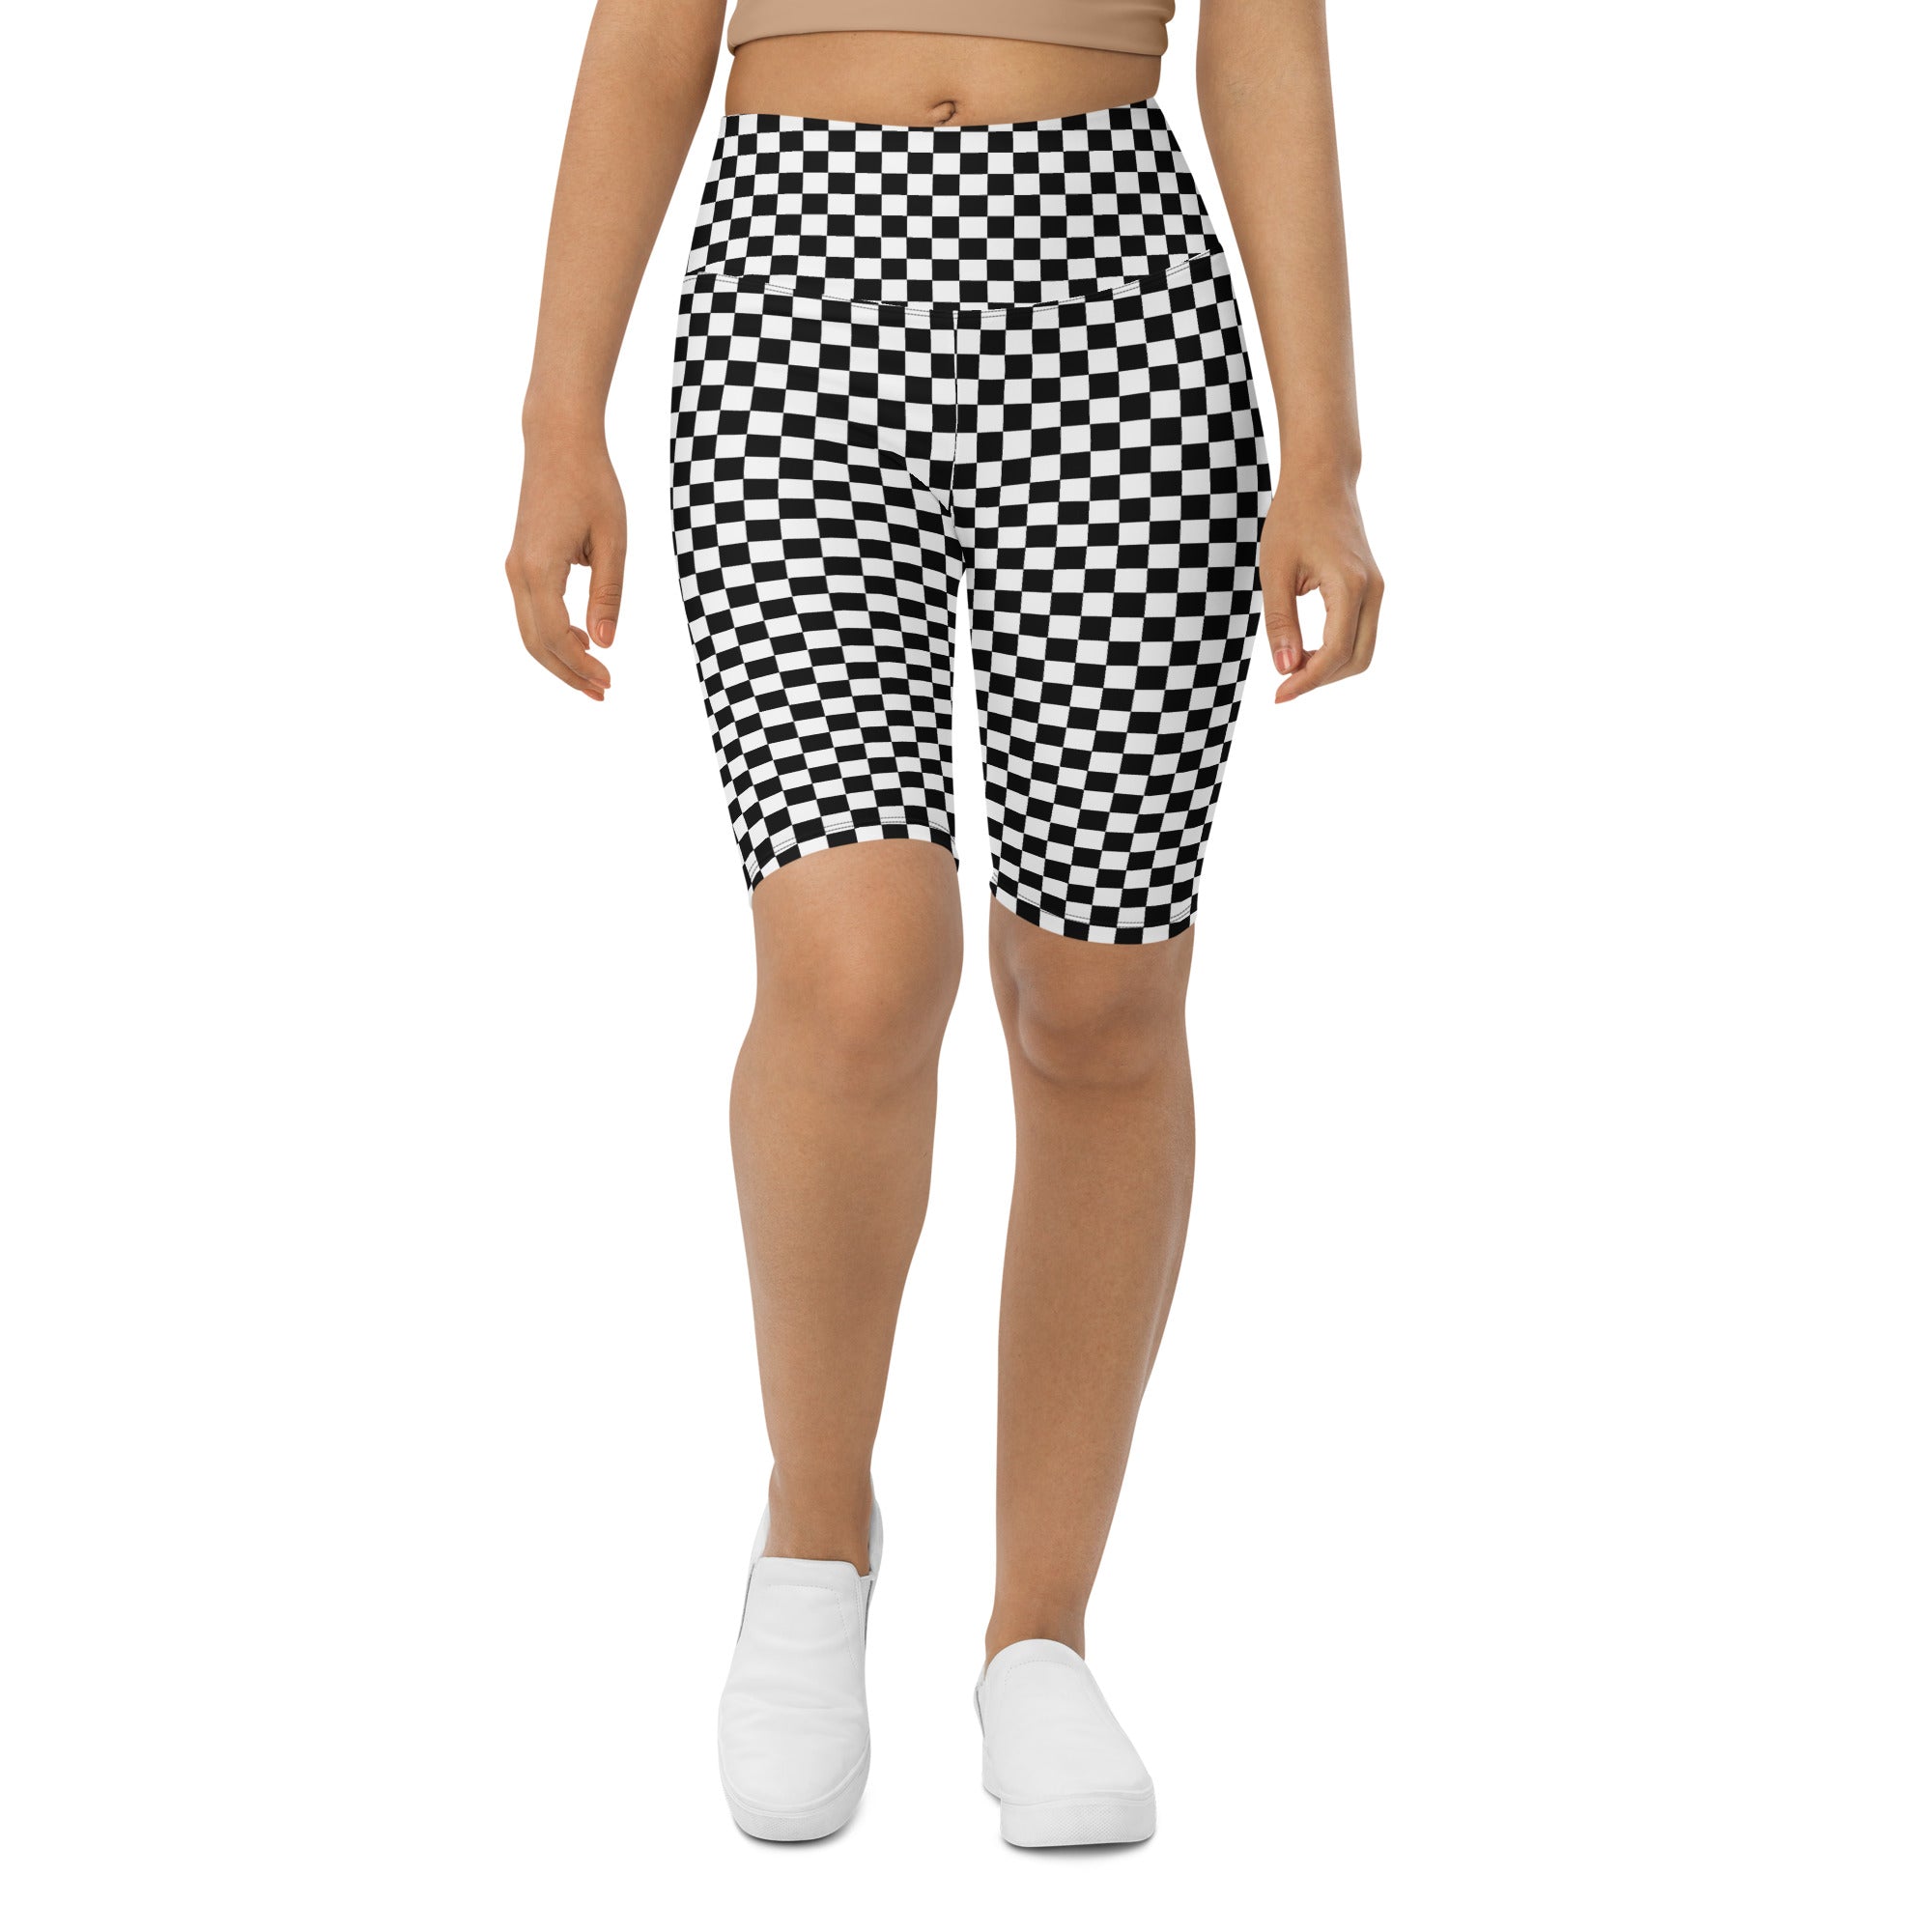 Checkered Biker Shorts